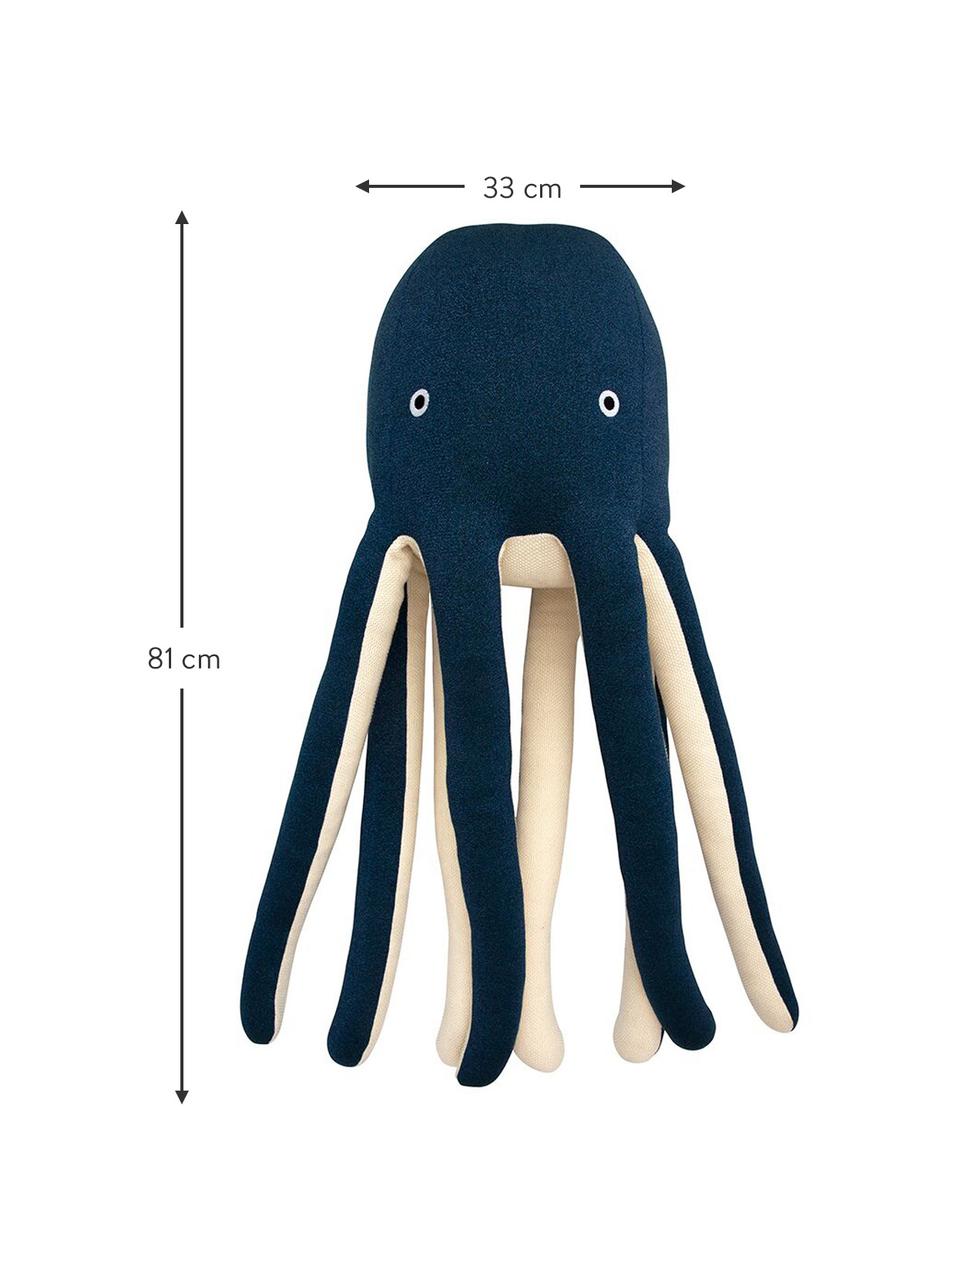 Przytulanka XL z bawełny organicznej Octopus Cosmo, 100% bawełna organiczna, certyfikat OCS, Ciemny niebieski, kremowy, S 33 x W 81 cm